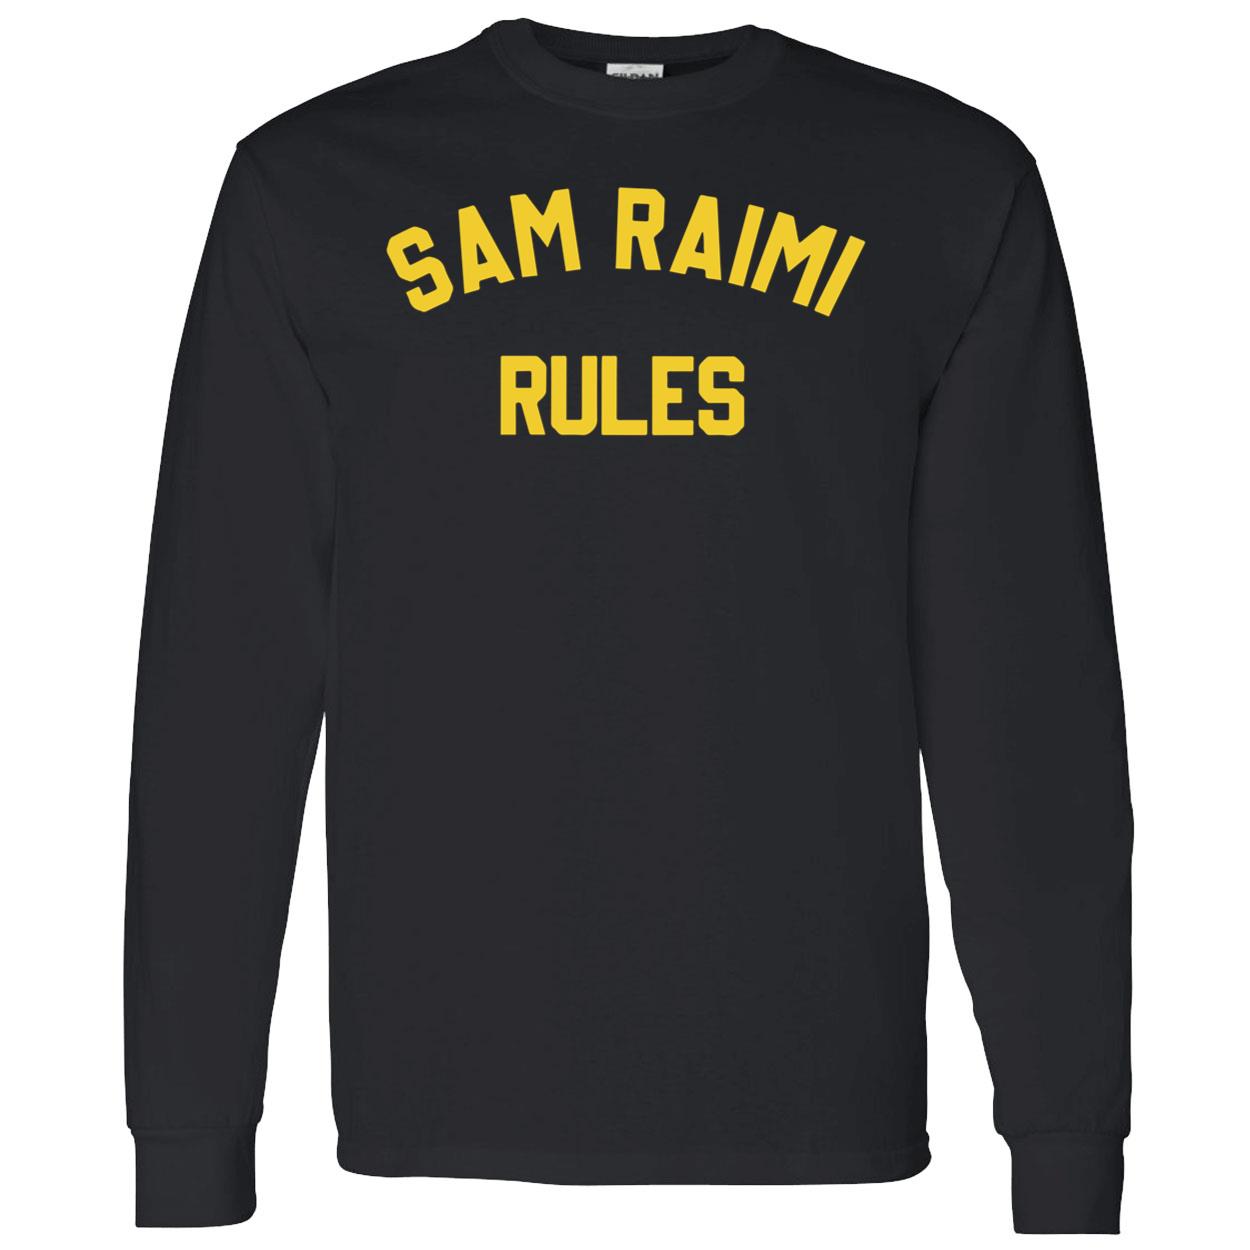 Sam Raimi Rules Shirt